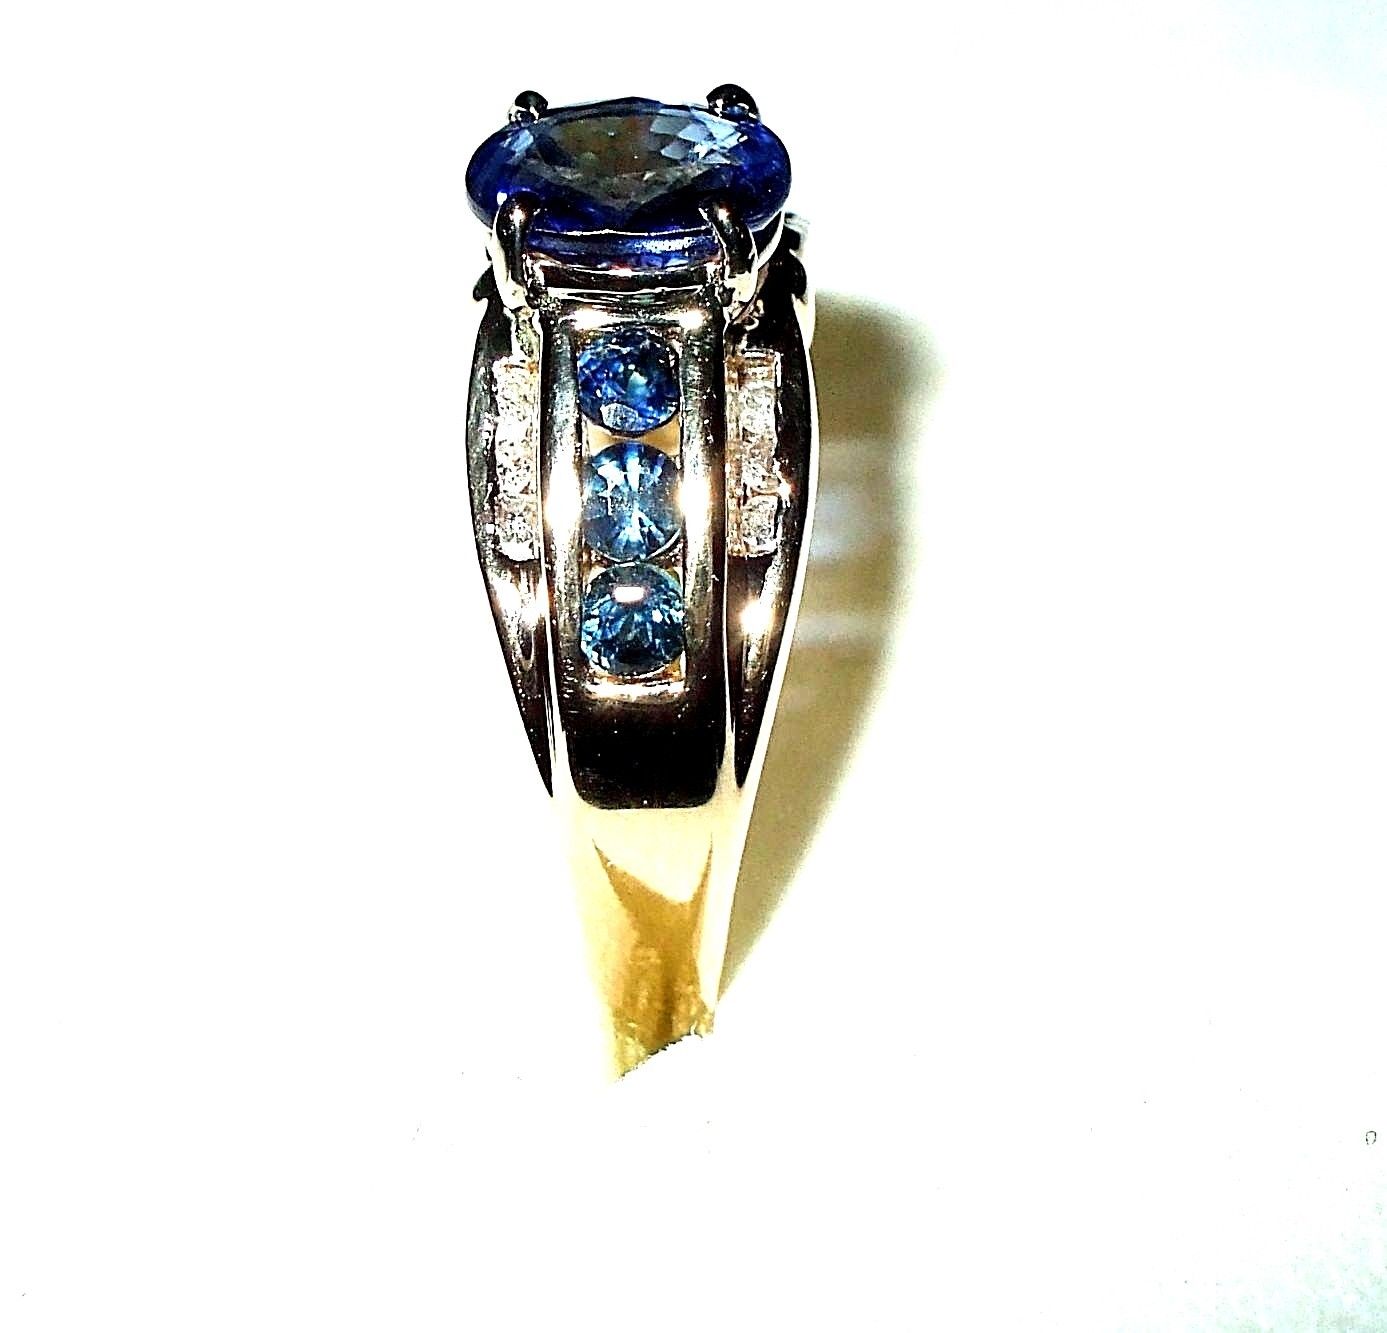 Genuine 1.0 ct Sapphire & Diamond Ring 14K yellow gold $2500 NWT